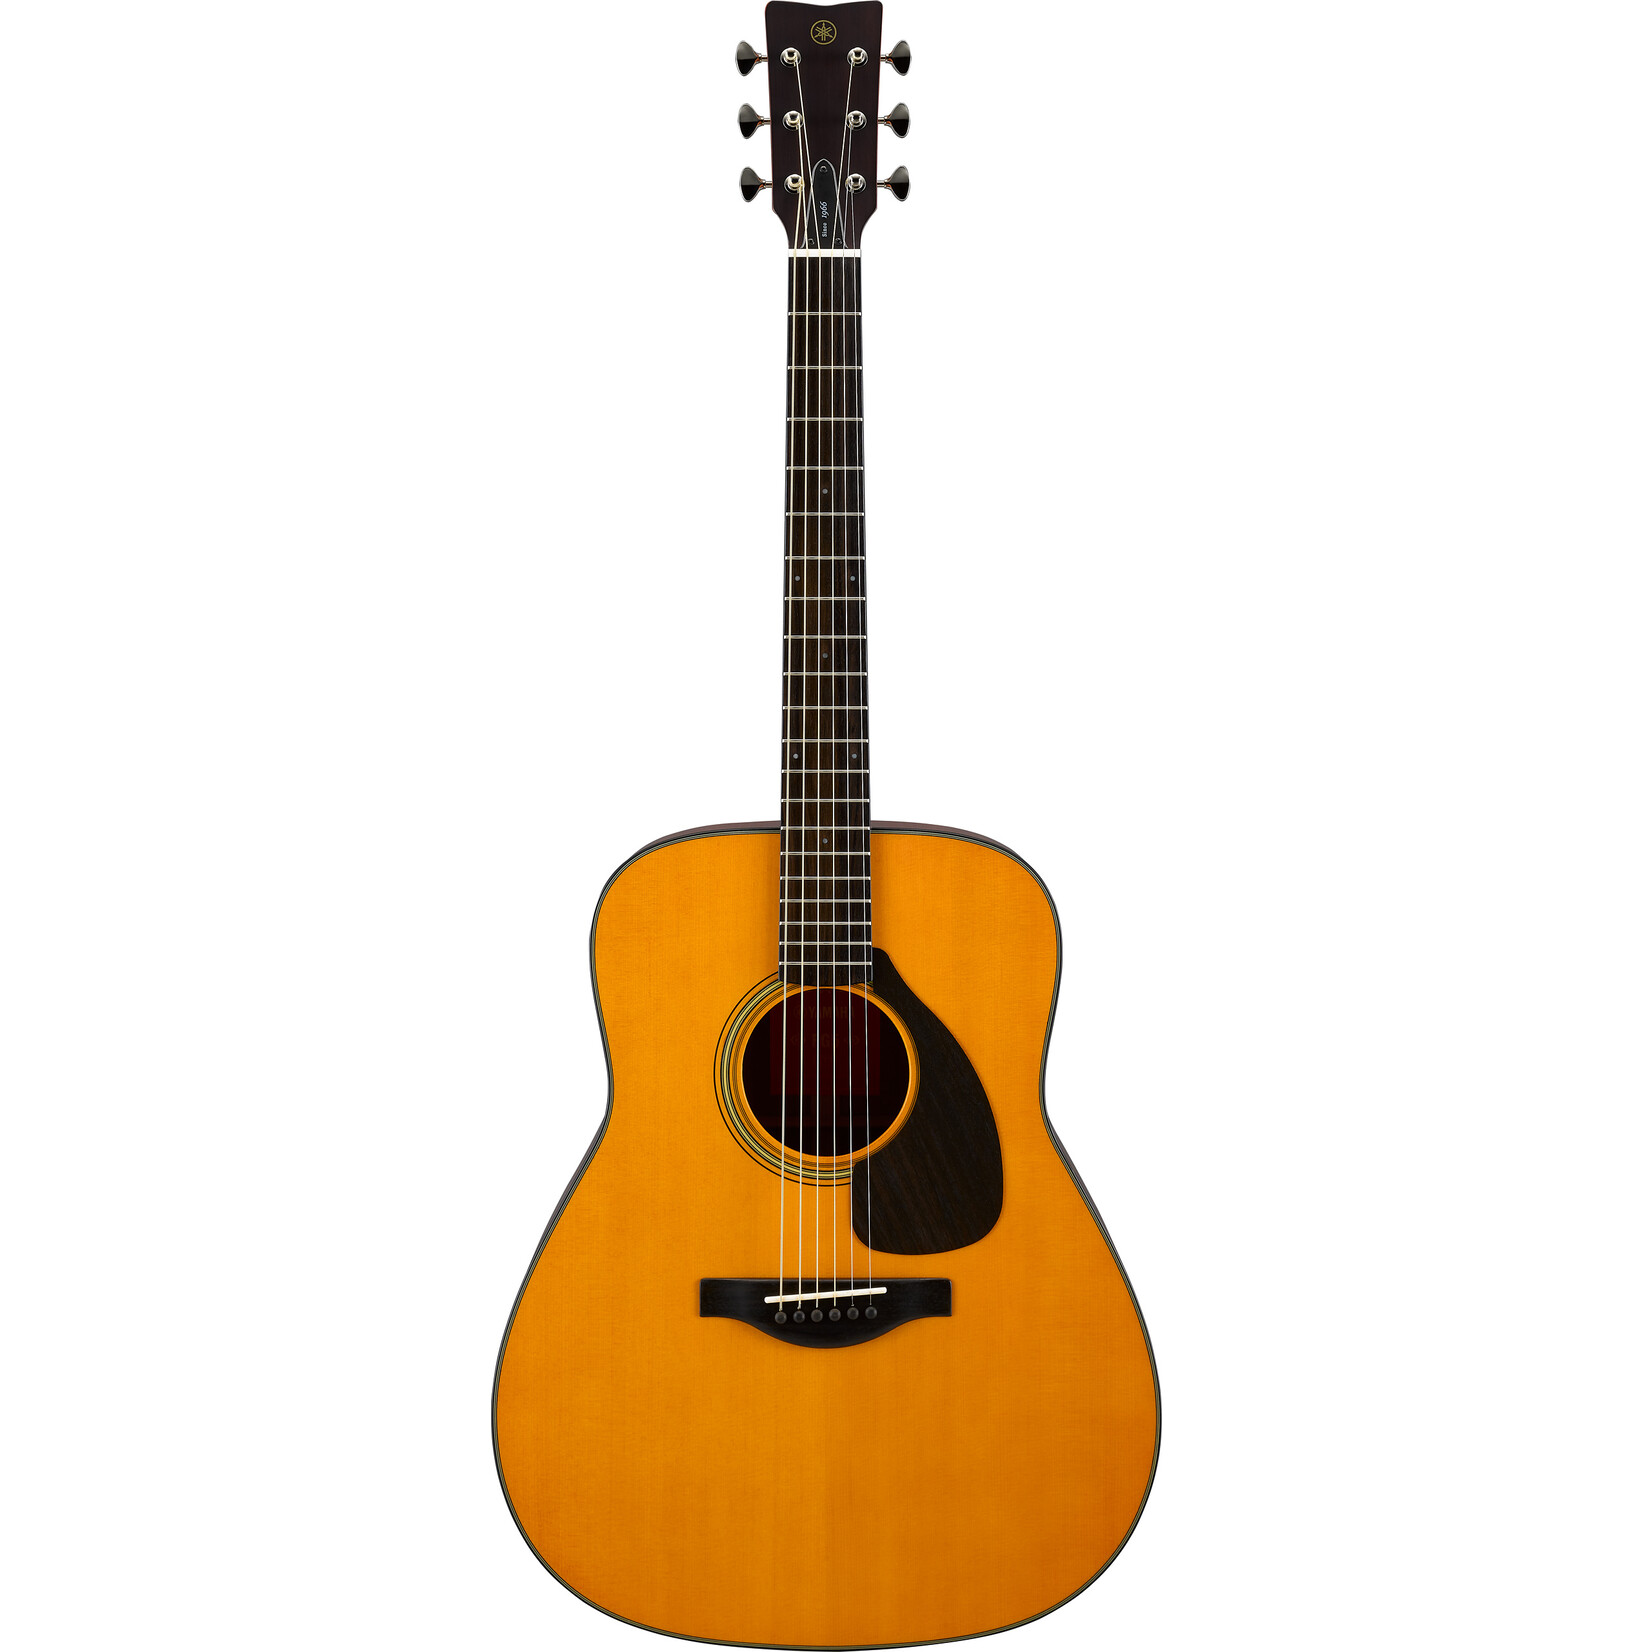 Yamaha Yamaha FG5 Red Label Acoustic Guitar